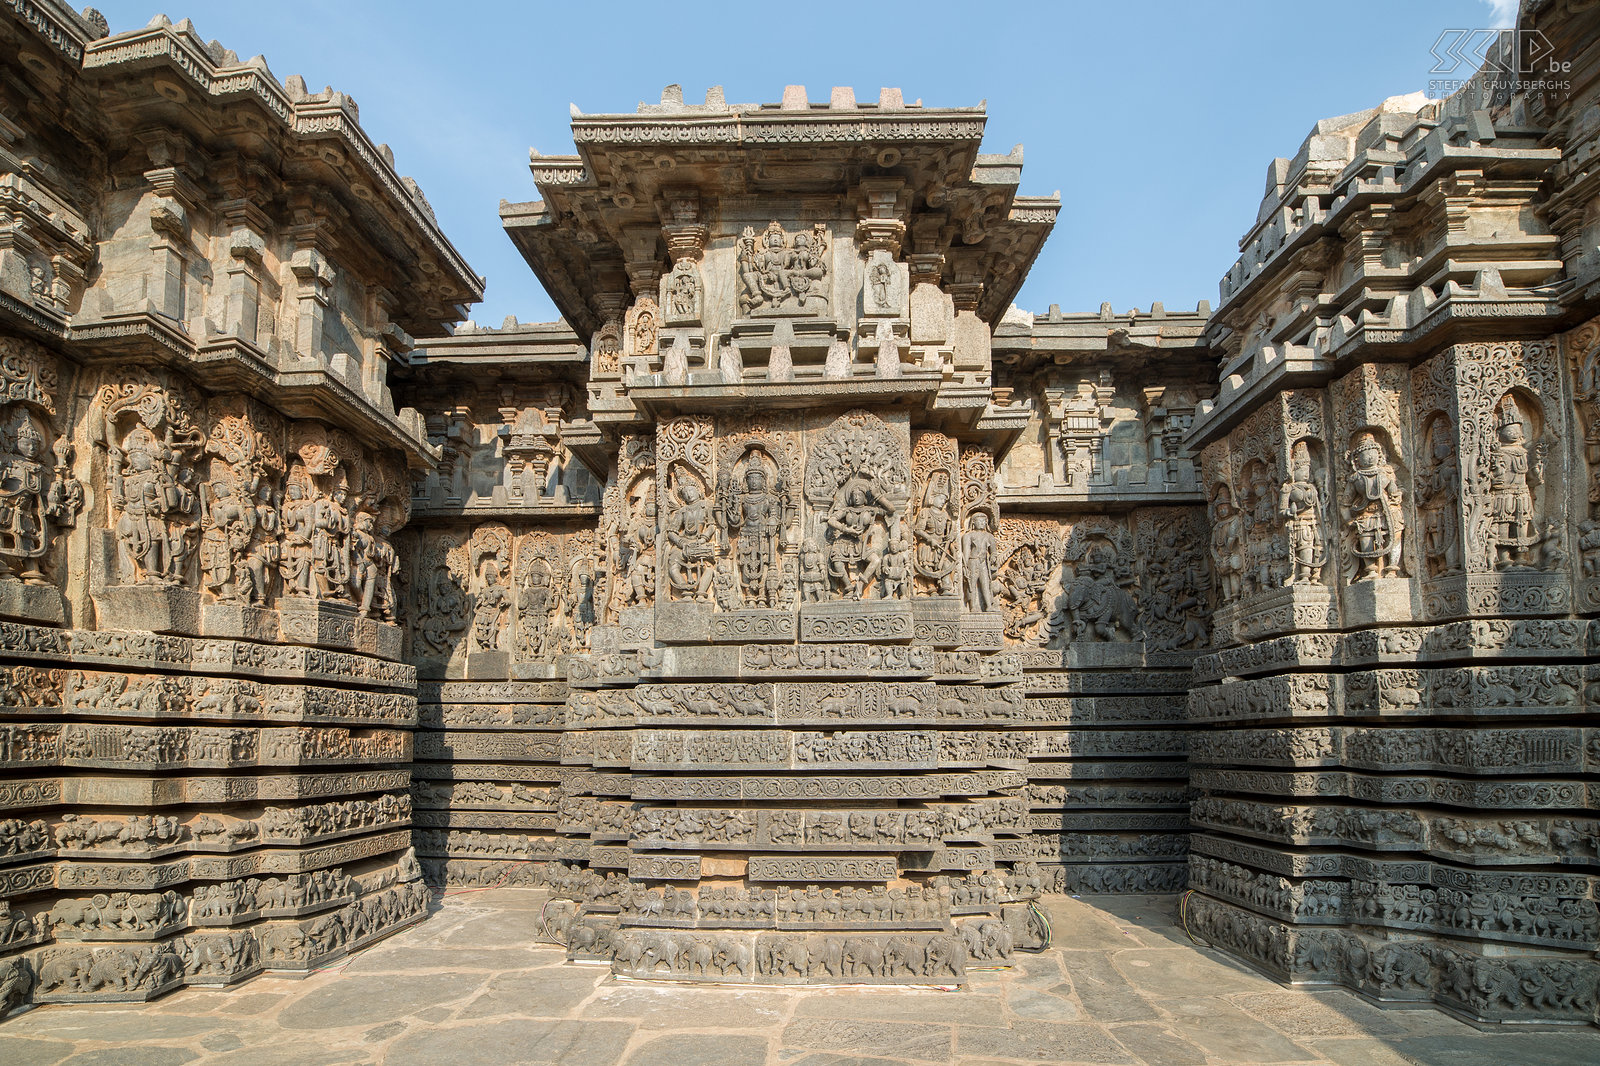 Halebidu De muren van de Hoysala tempel in Halebidu zijn bedekt met een eindeloze verscheidenheid aan reliëfs uit de hindoeïstische mythologie, dieren en dansende figuren. Halebidu was de hoofdstad van het Hoysala koninkrijk in de 12e en 13e eeuw. Stefan Cruysberghs